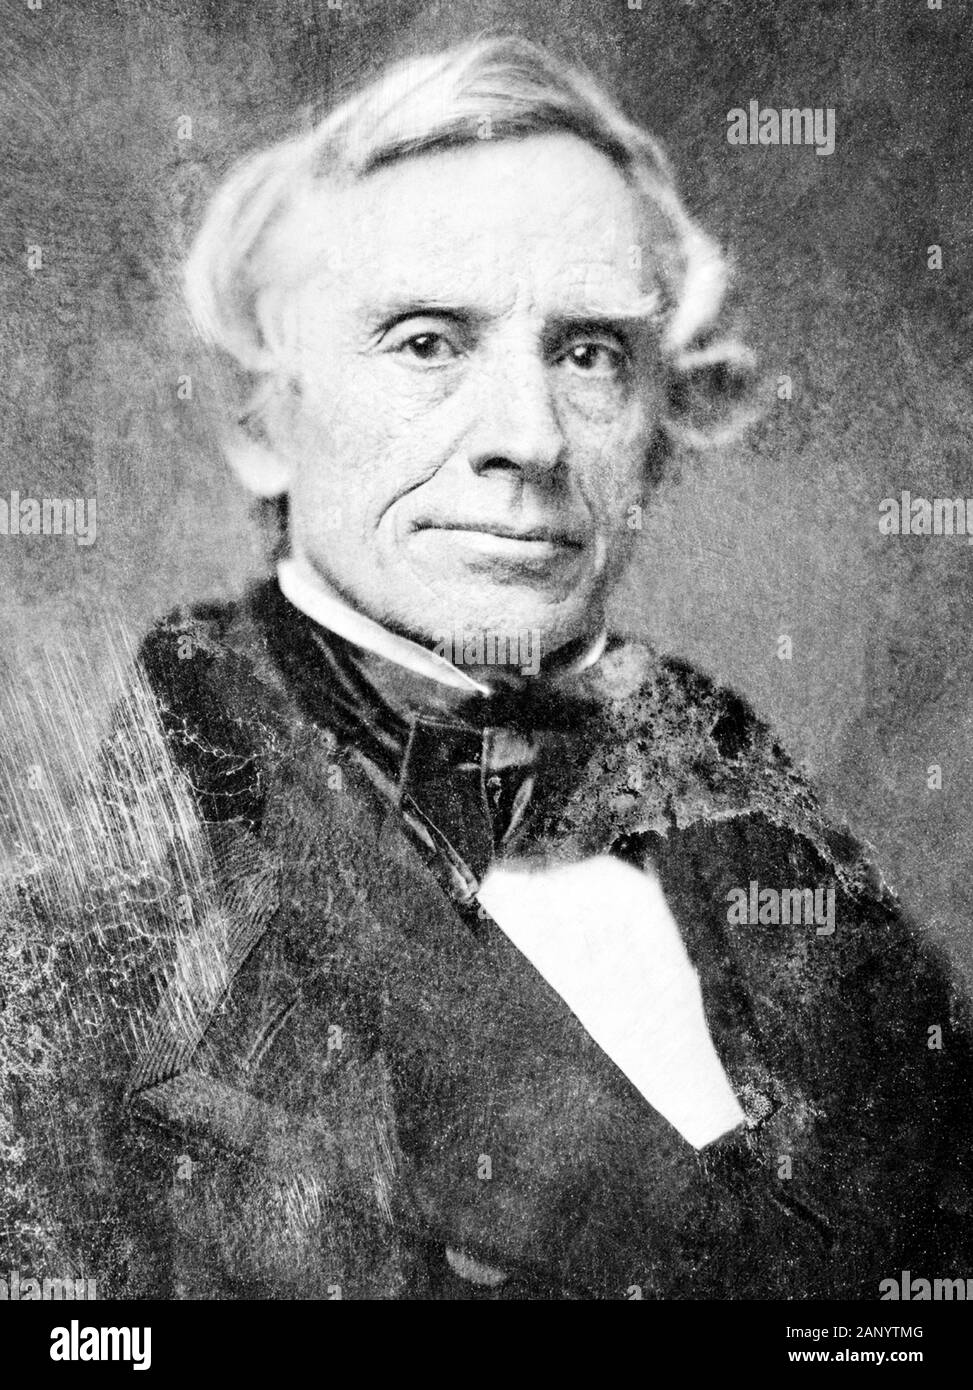 Ritratto d'epoca foto del pittore e inventore americano Samuel F B Morse (1791 – 1872) – pioniere nello sviluppo del telegrafo elettrico e co-creatore di Morse Code. Foto circa 1850 di Mathew B Brady. Foto Stock